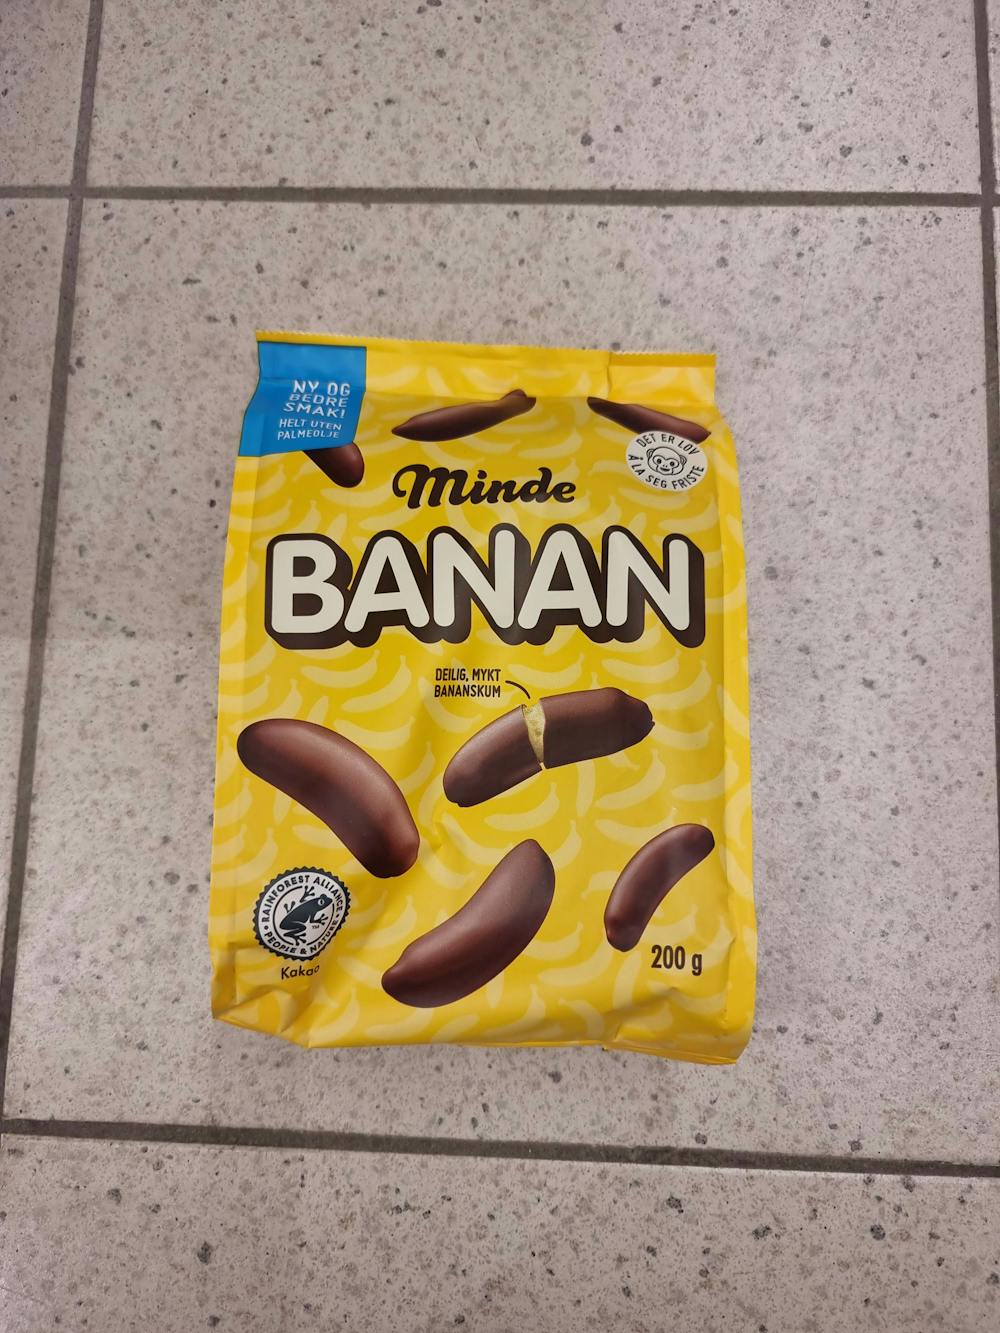 Banansjokolade, Minde